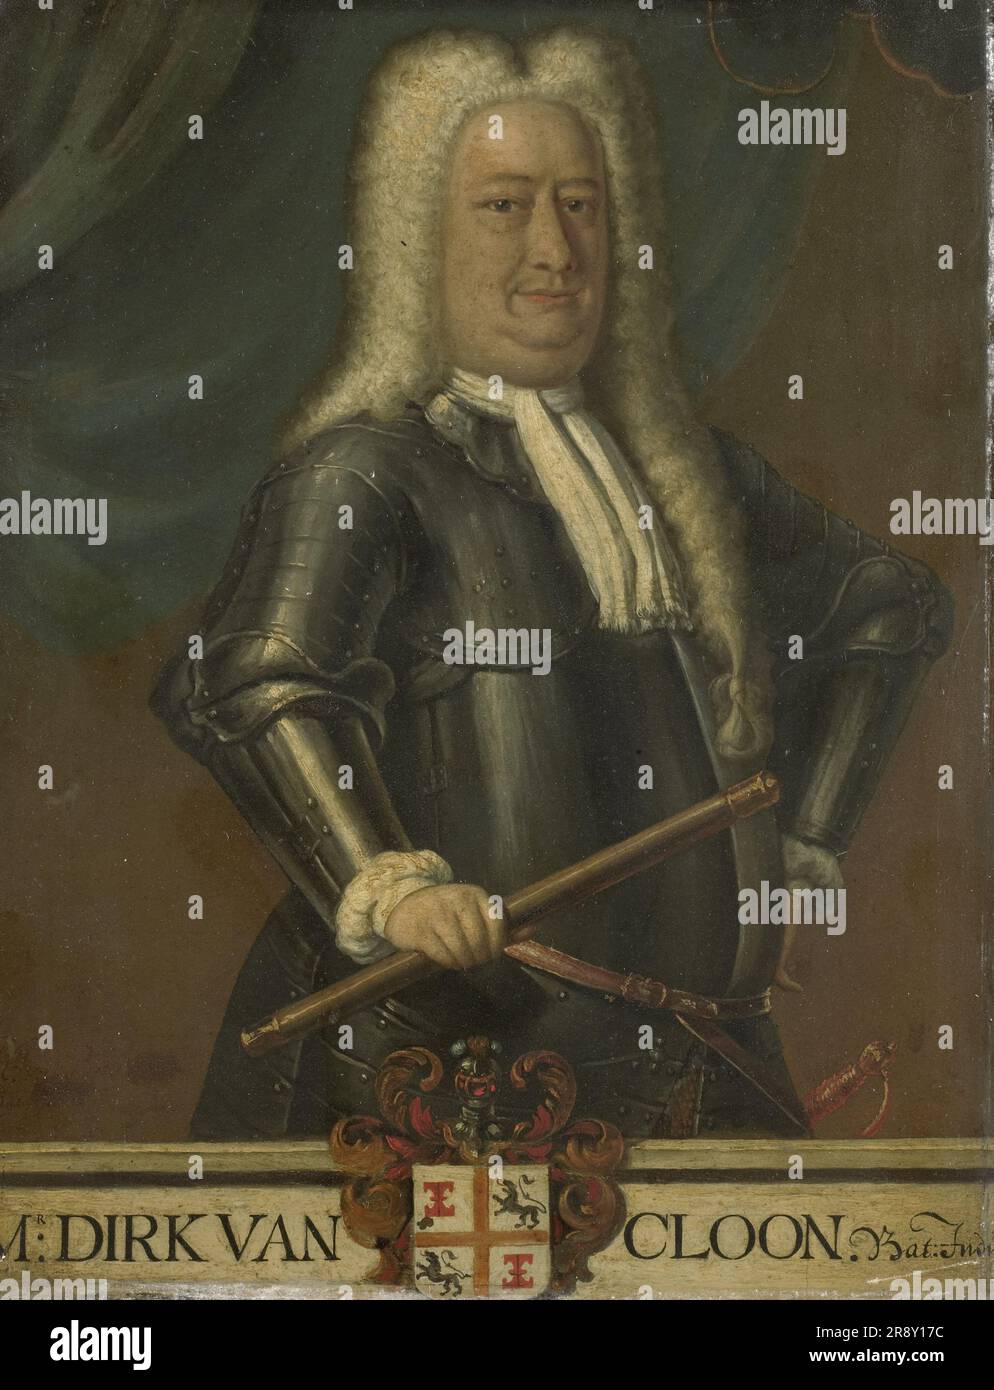 Ritratto di Dirk van Cloon, Governatore generale delle Indie Orientali olandesi, 1750-1799. Foto Stock